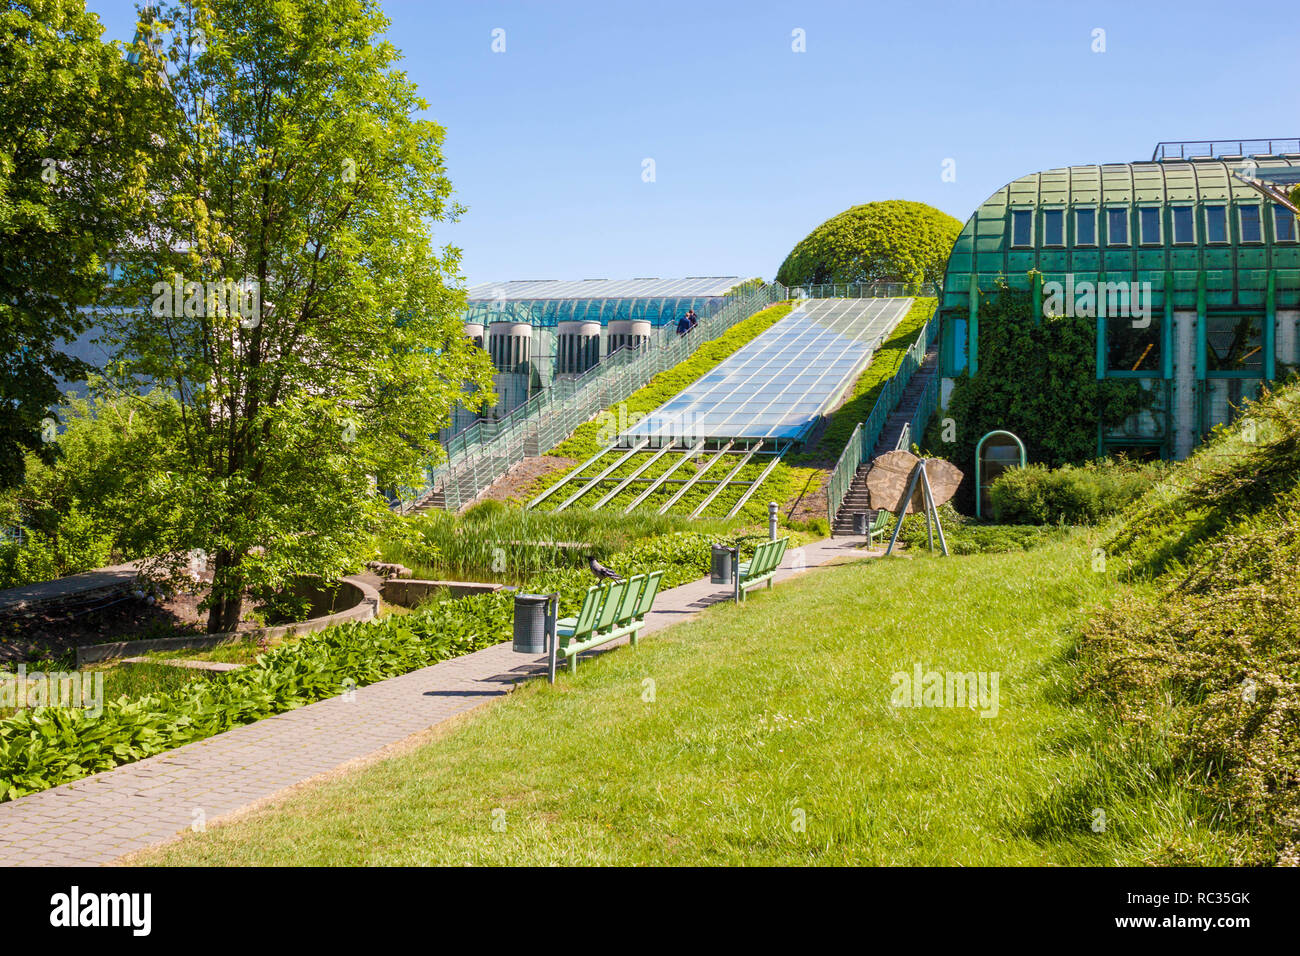 Warschau, Polen - 7. Mai 2018: Schöne Gärten der Universität Warschau Bibliothek. Moderne, umweltfreundliche Architektur und Landschaftsgestaltung. Warschau, Polen Stockfoto